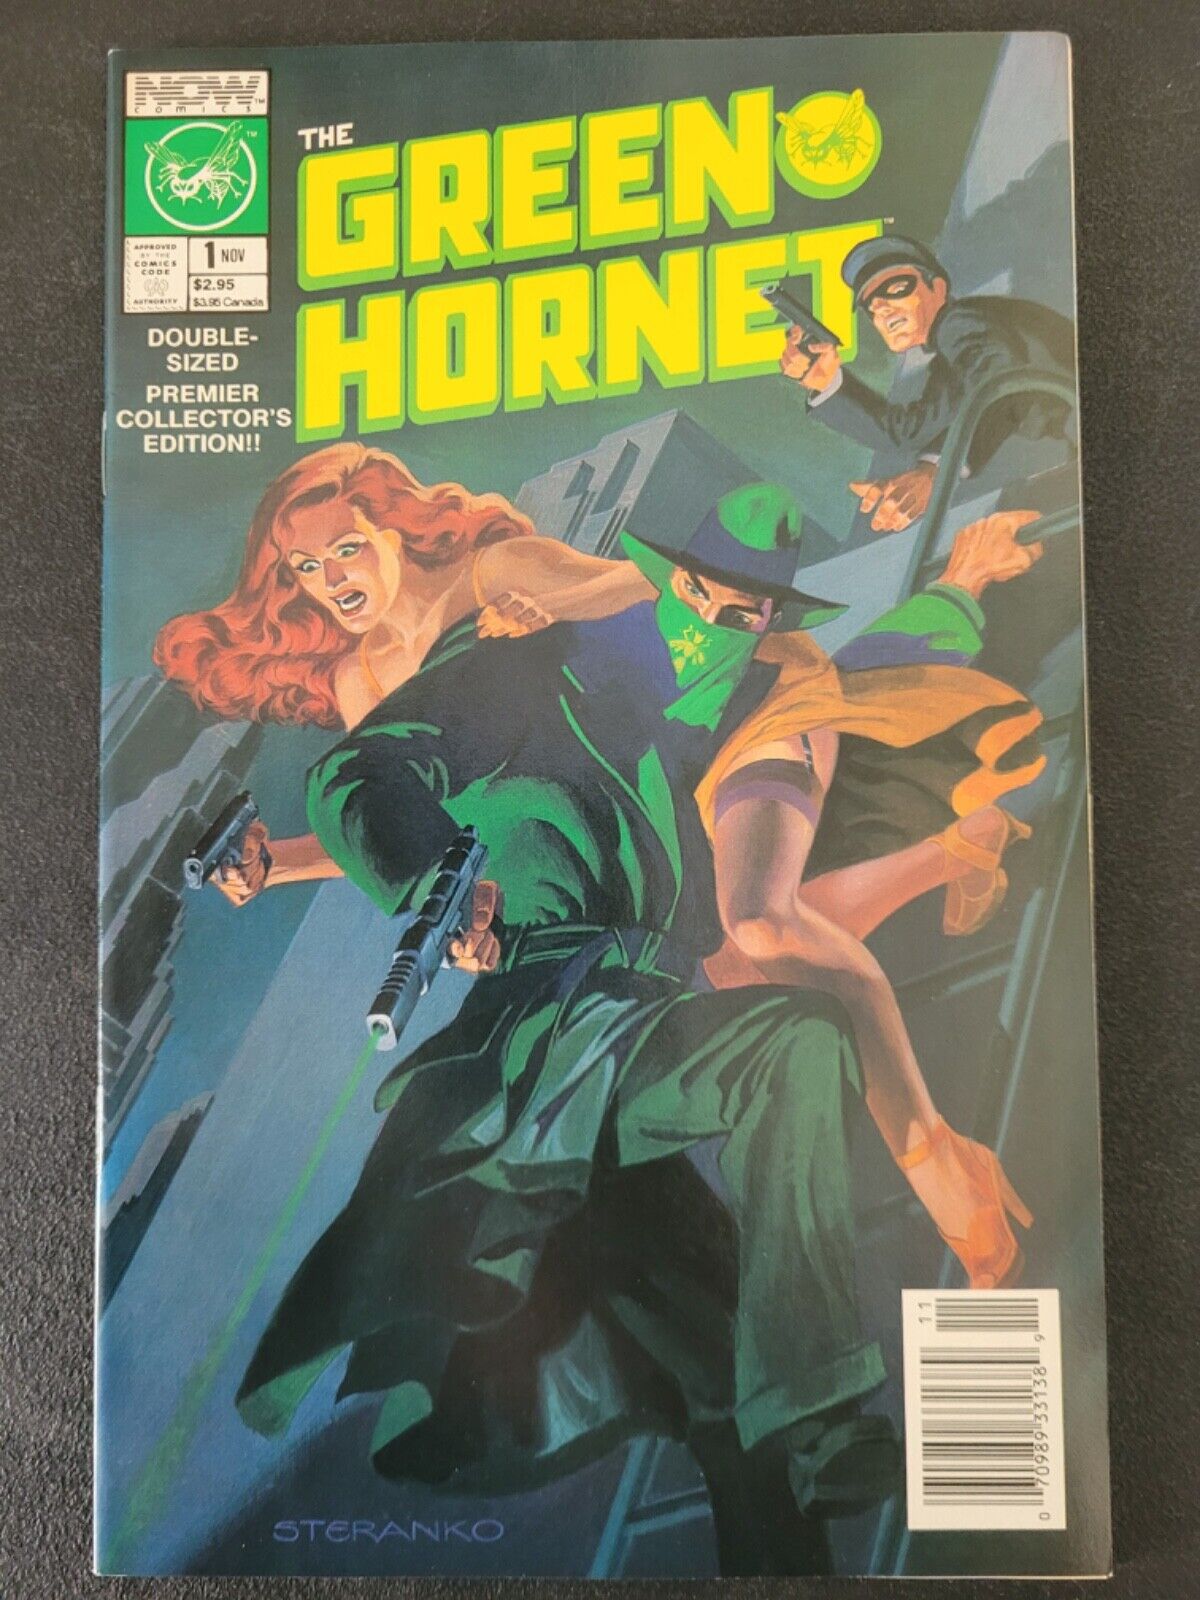 THE GREEN HORNET #1 & 2 (1989) NOW COMICS NEWSSTAND EDITIONS BONUS DIRECT #1